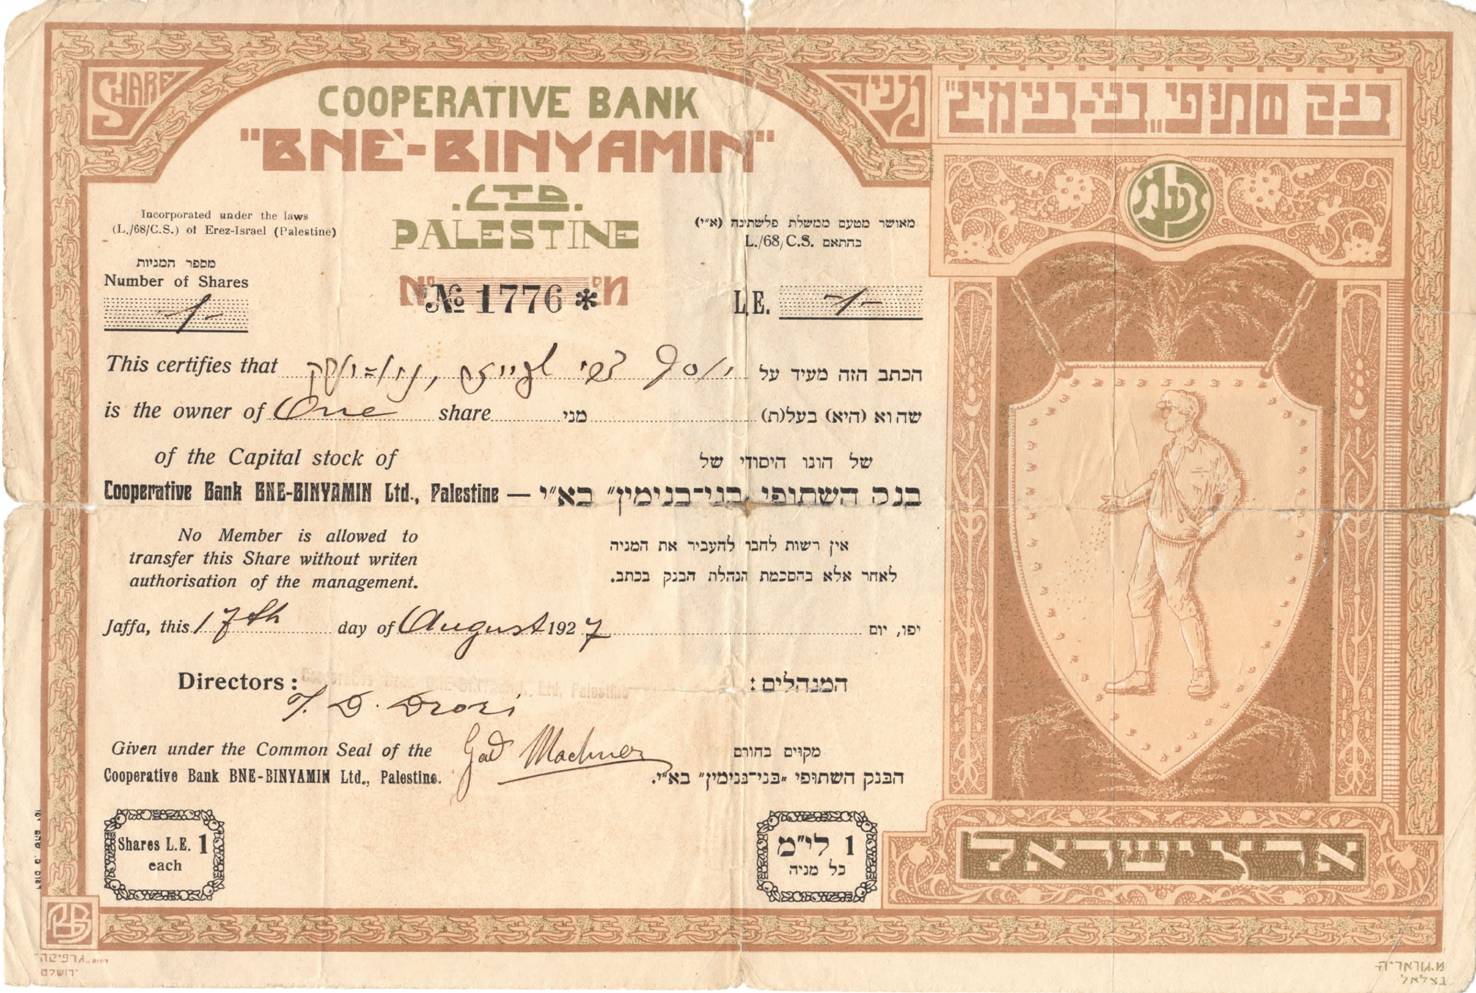 Cooperative Bank “Bne-Binyamin” Ltd.